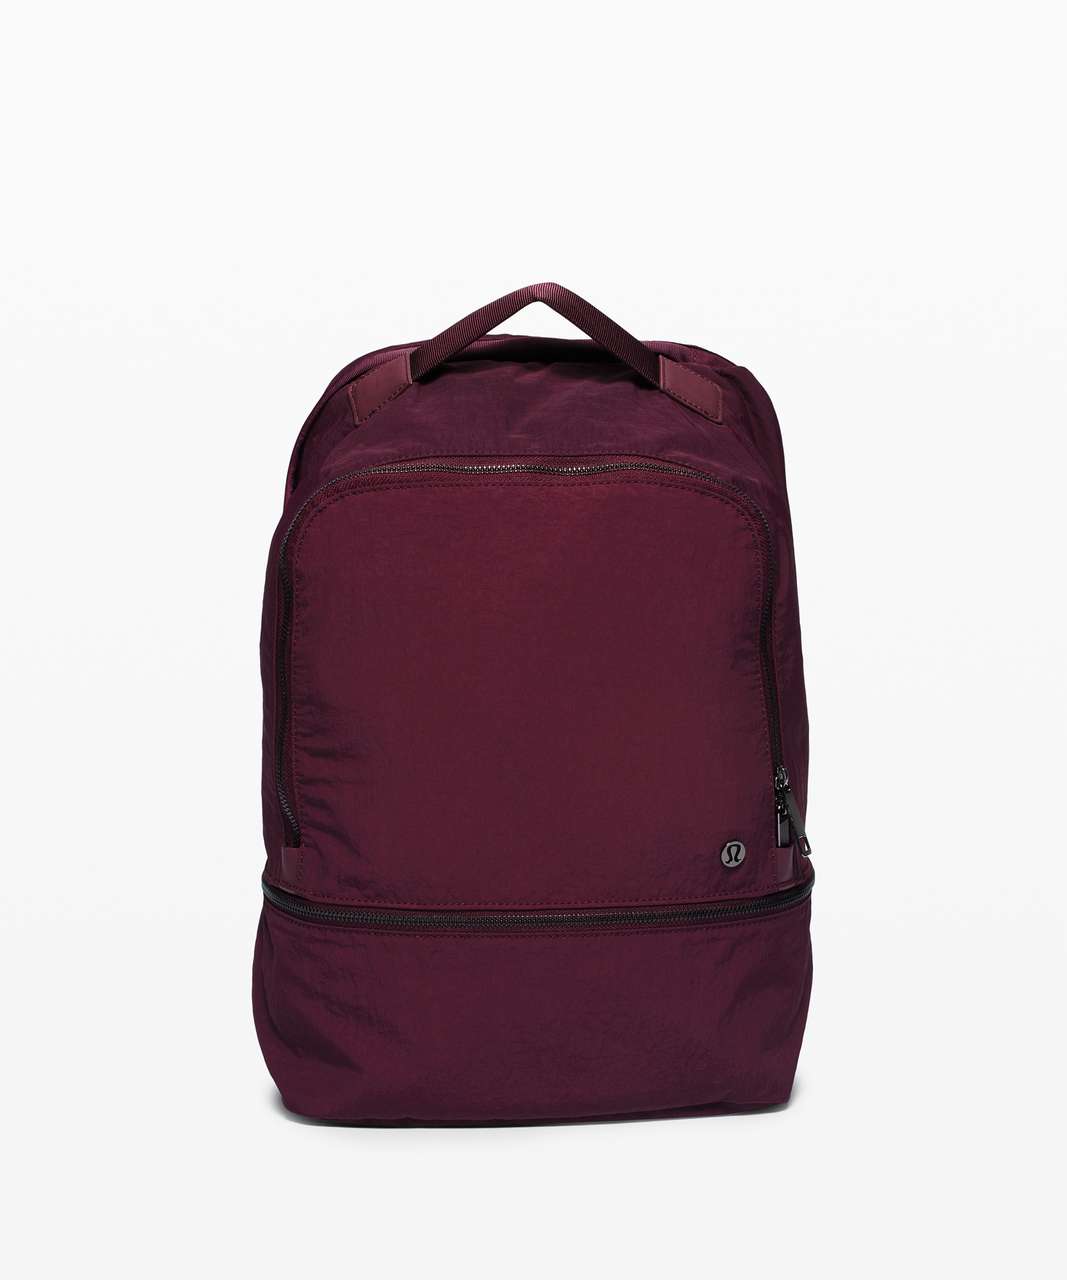 Lululemon City Adventurer Backpack *17L - Cassis